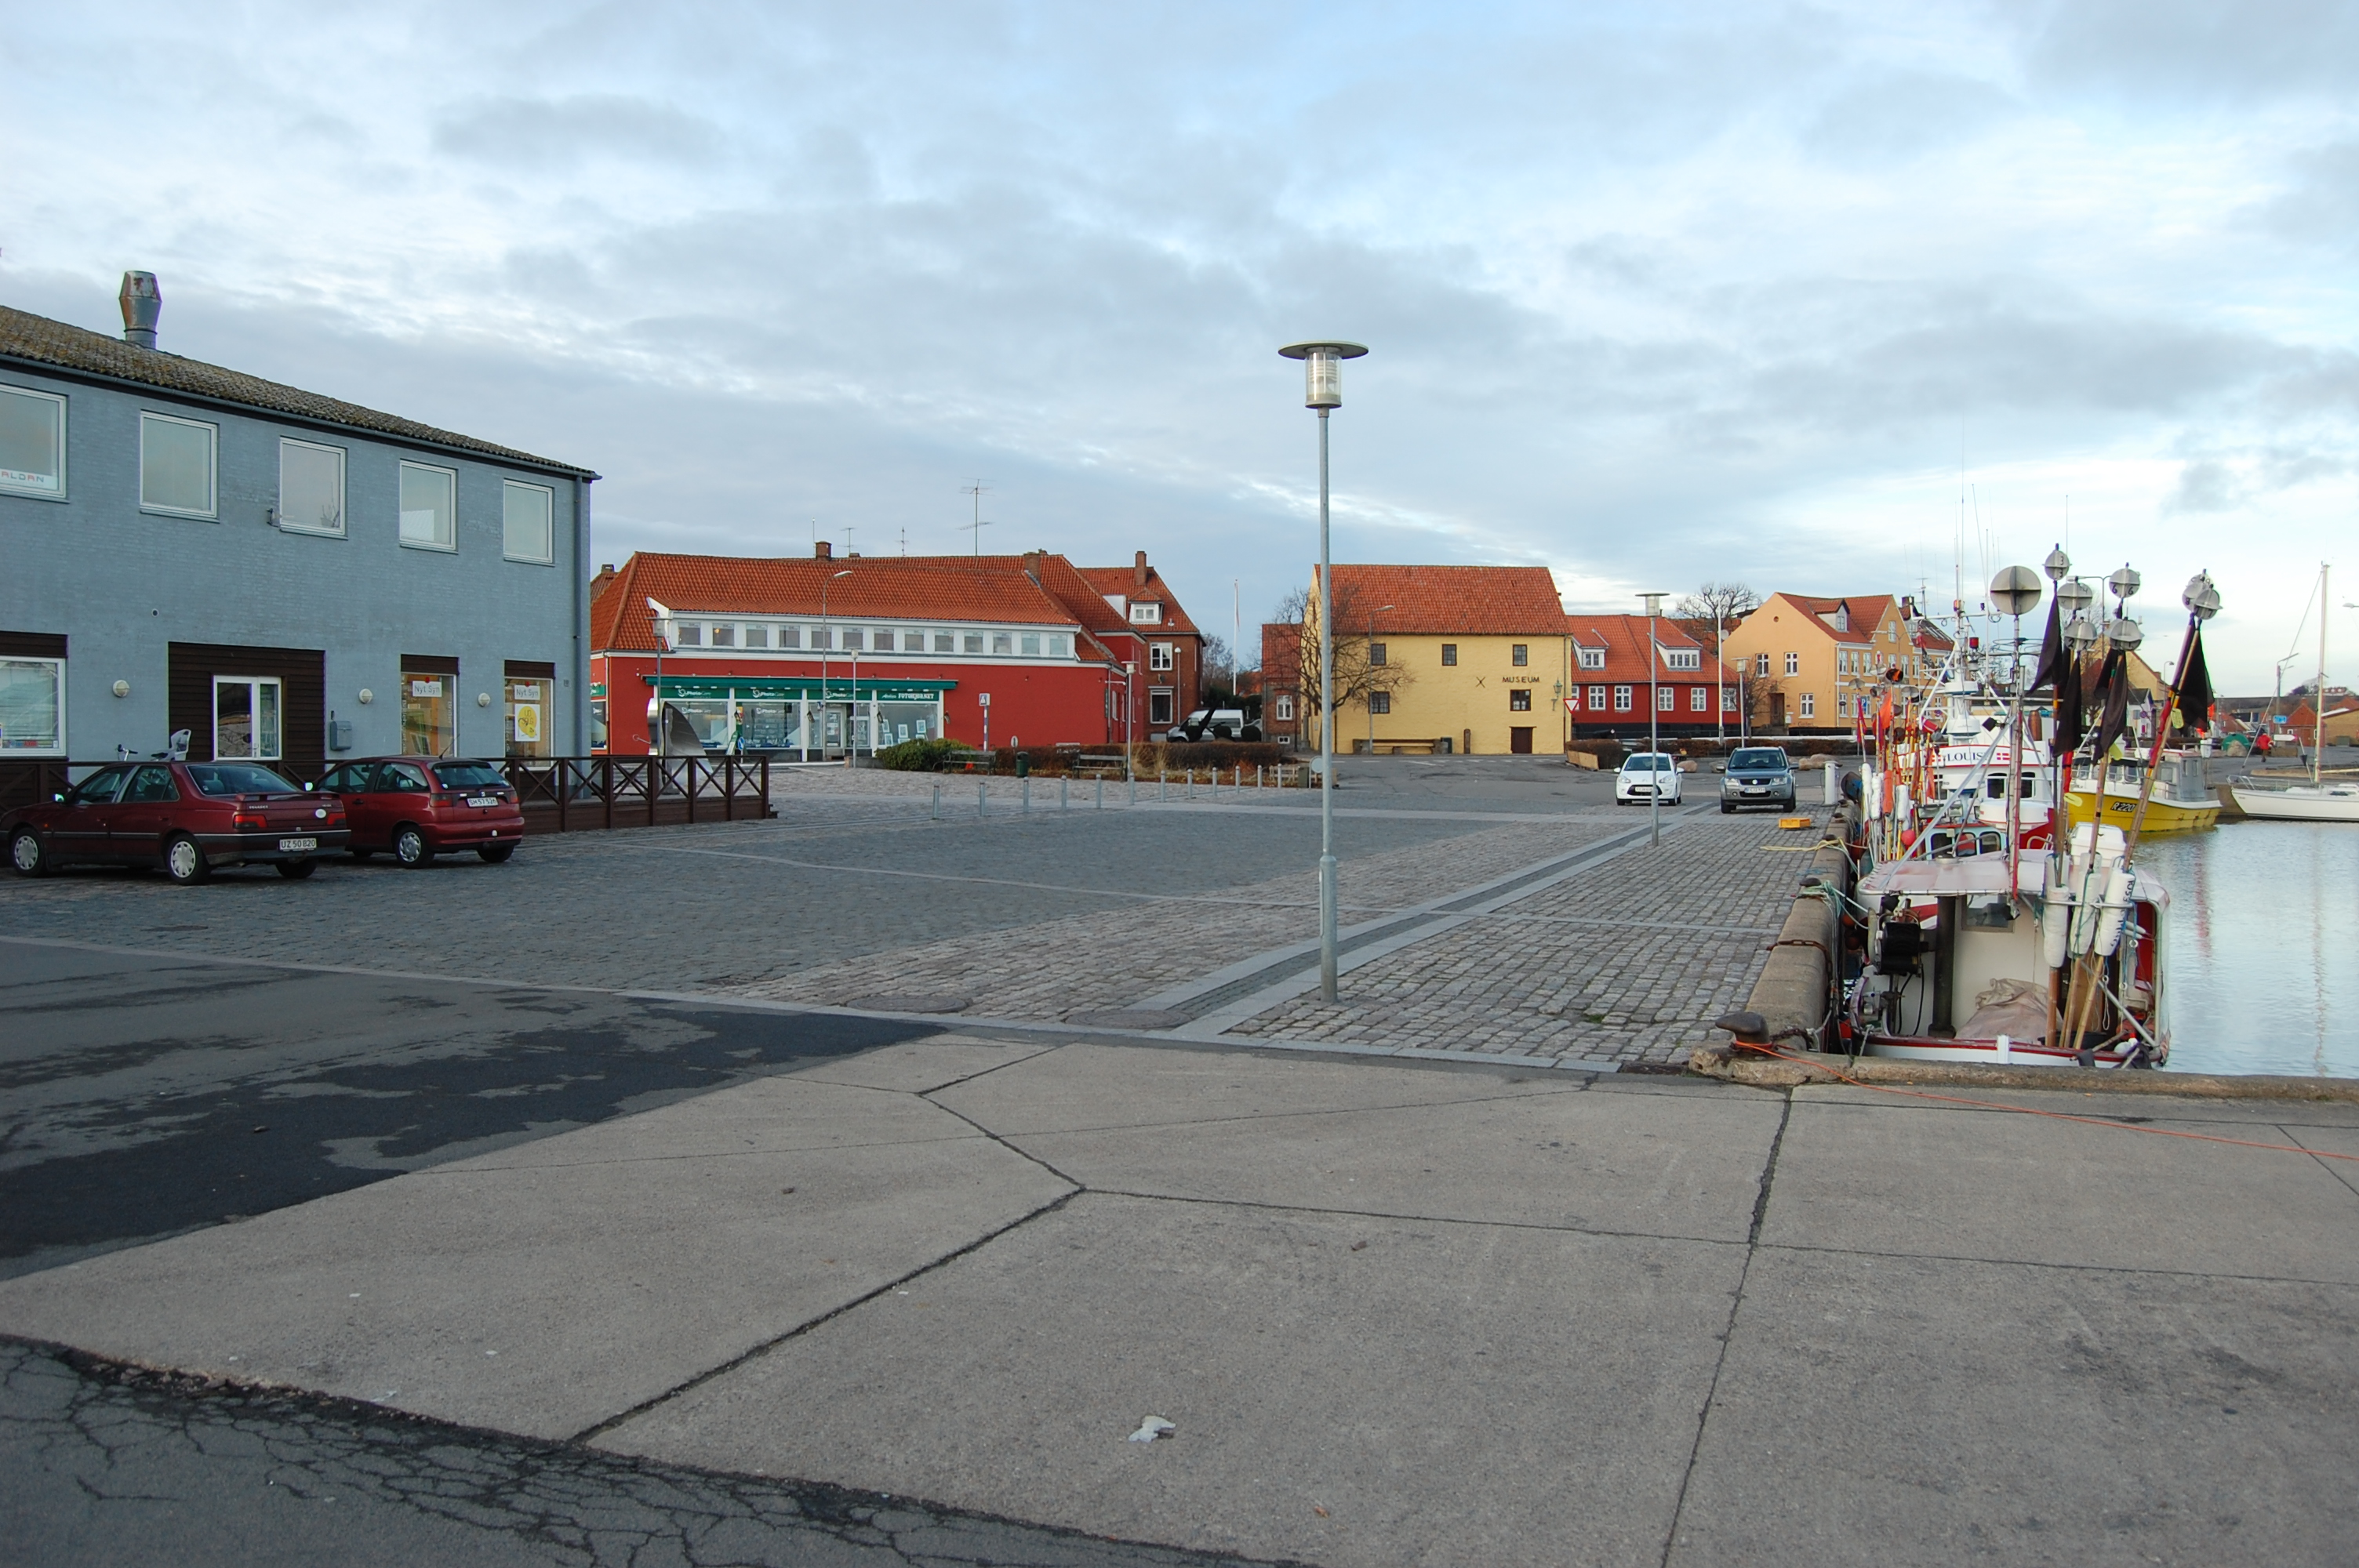 REDEGØRELSE LOKALPLANENS HENSIGTER Baggrund og hensigt Nexø Havn A/S ønsker at udvikle et bynært erhvervsområde ved Nexø gamle havn til turisme-, fiskeri- og serviceaktiviteter samt boliger.